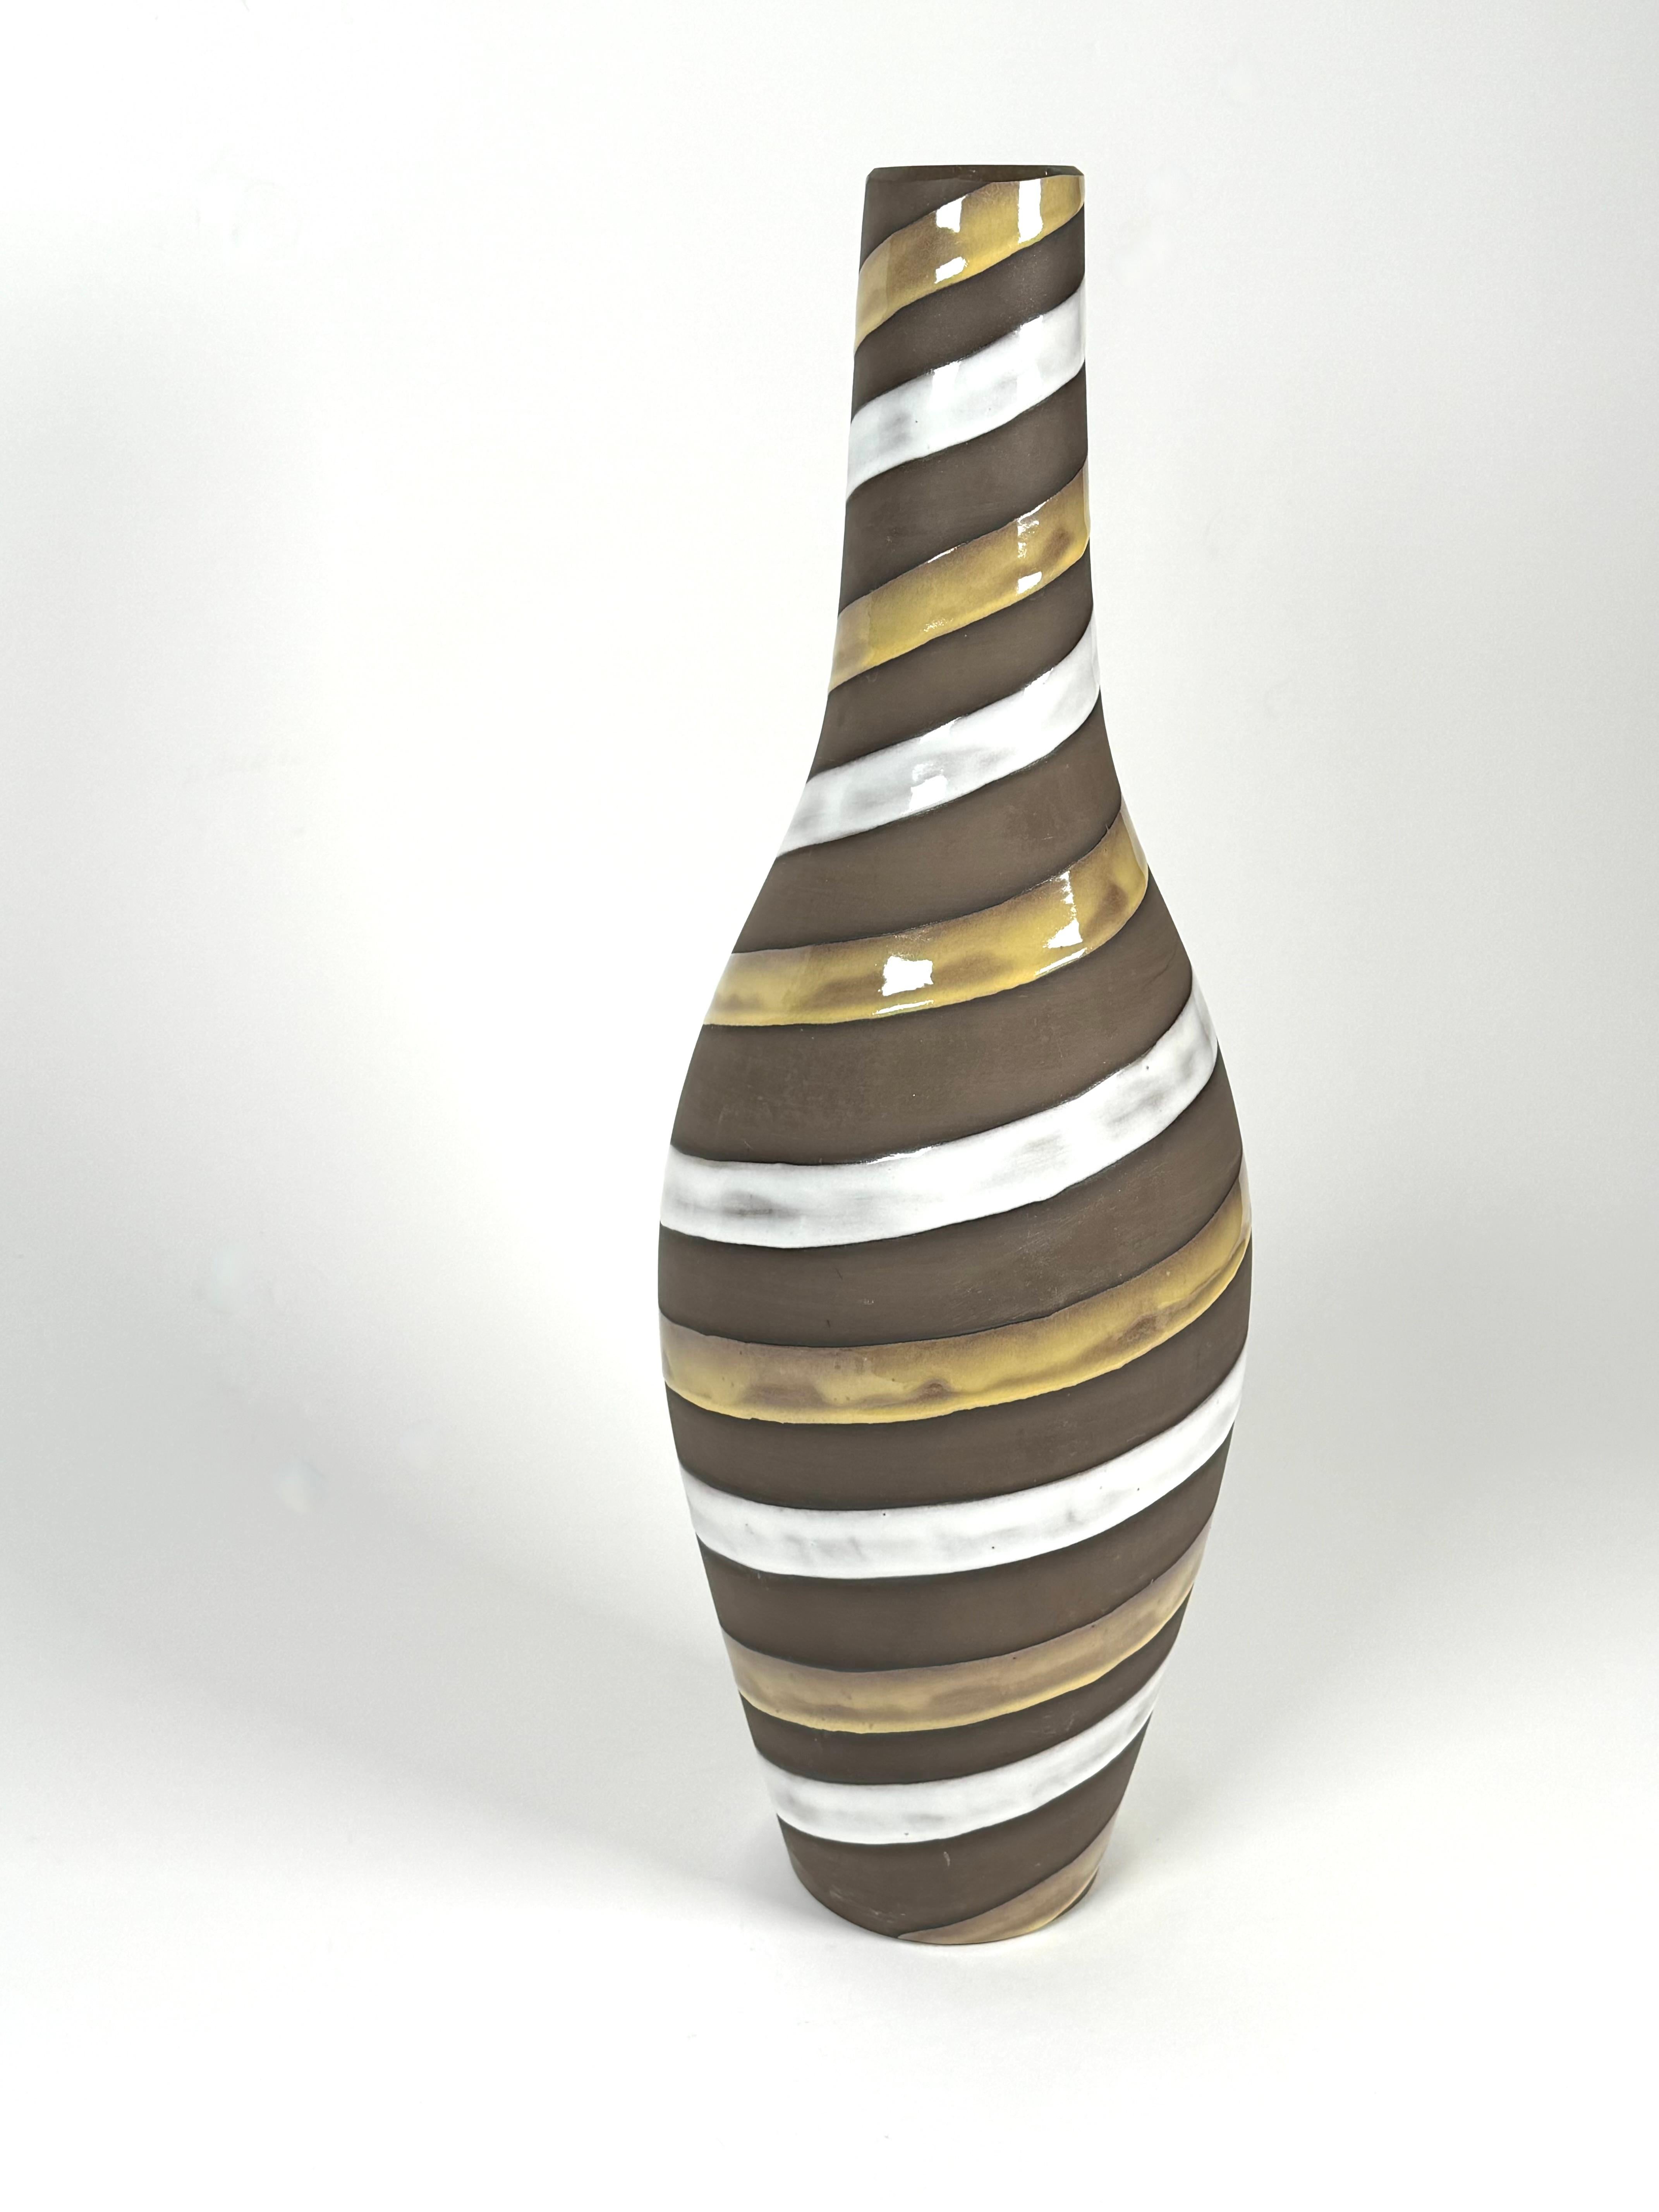 Vase conique en céramique de Studio de l'artiste suédoise Ingrid Atterberg (1920-2008). De forme effilée, le vase est orné de glaçures rayées de haut en bas, avec une glaçure blanc cassé et une glaçure jaune terreux qui embellissent le corps en